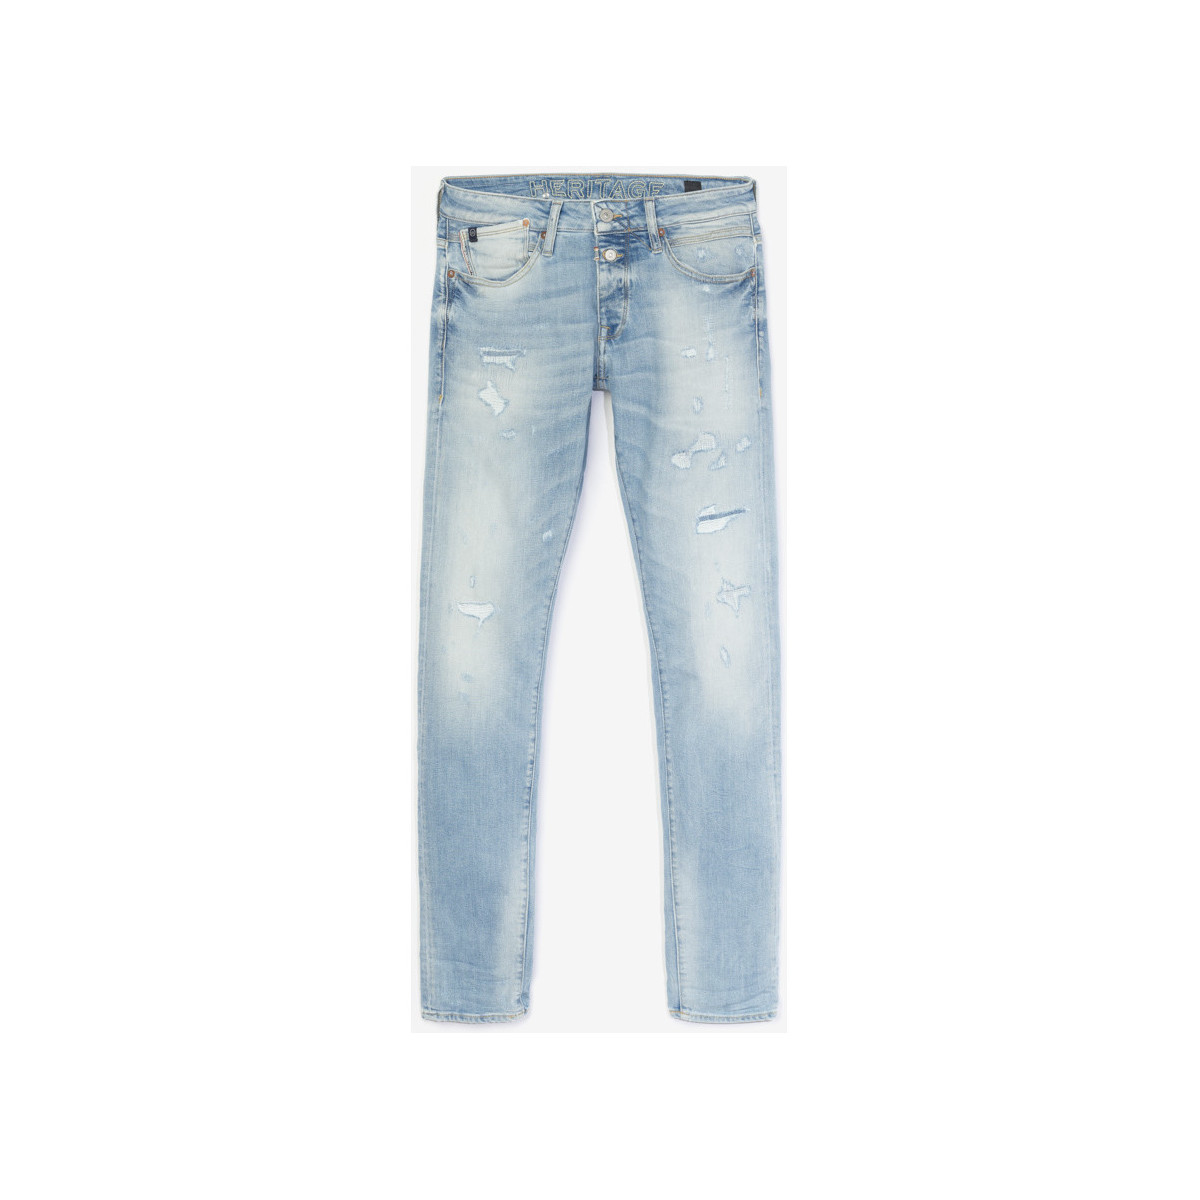 Le Temps des Cerises Bleu Calw 700/11 adjusted jeans destroy vintage bleu olQGBnC6